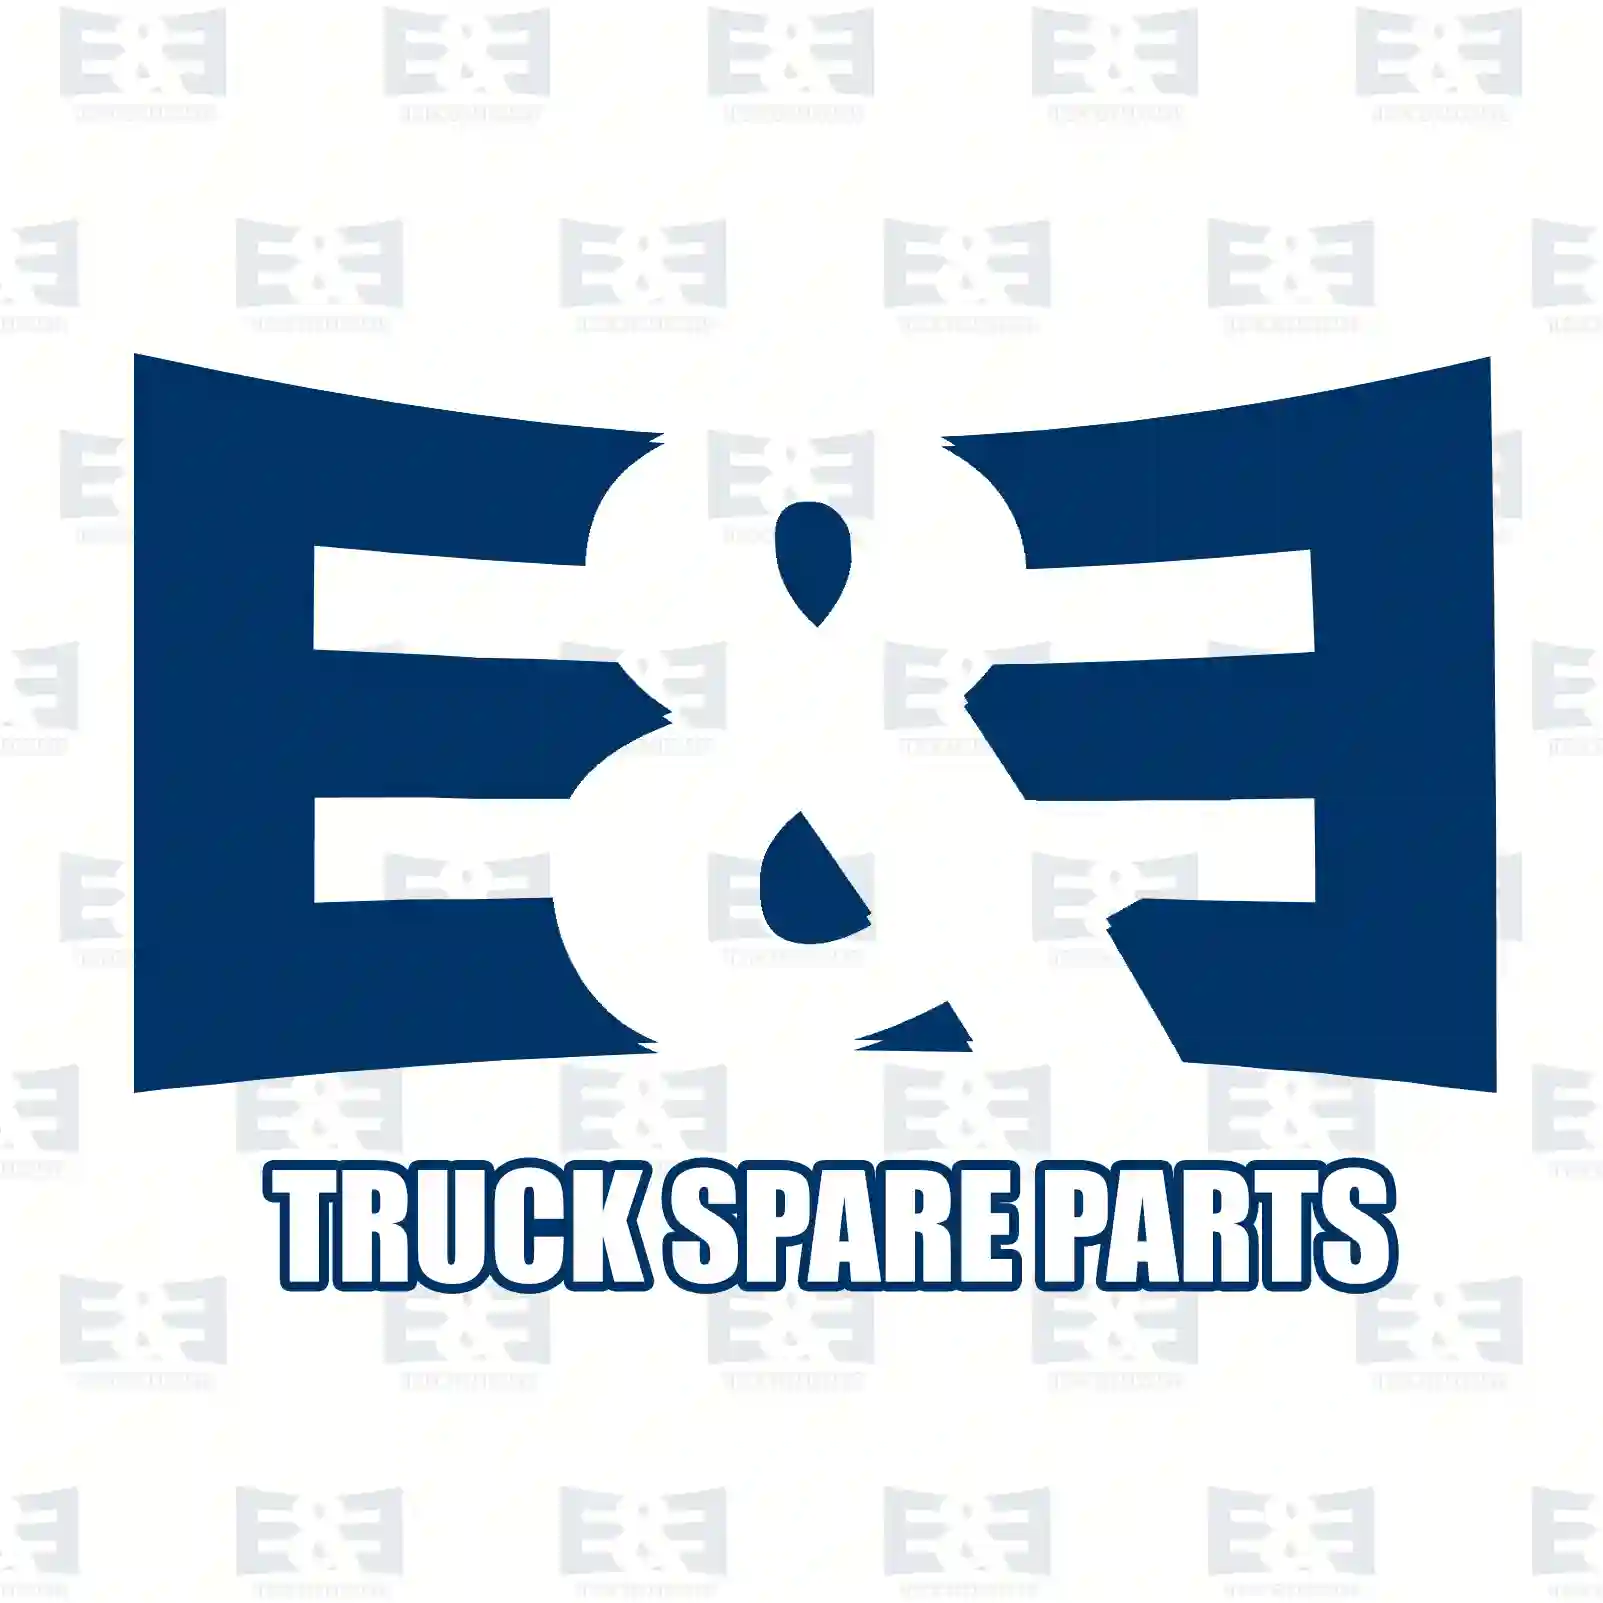 Wear indicator, 2E2296635, 6775400717, ZG50932-0008 ||  2E2296635 E&E Truck Spare Parts | Truck Spare Parts, Auotomotive Spare Parts Wear indicator, 2E2296635, 6775400717, ZG50932-0008 ||  2E2296635 E&E Truck Spare Parts | Truck Spare Parts, Auotomotive Spare Parts